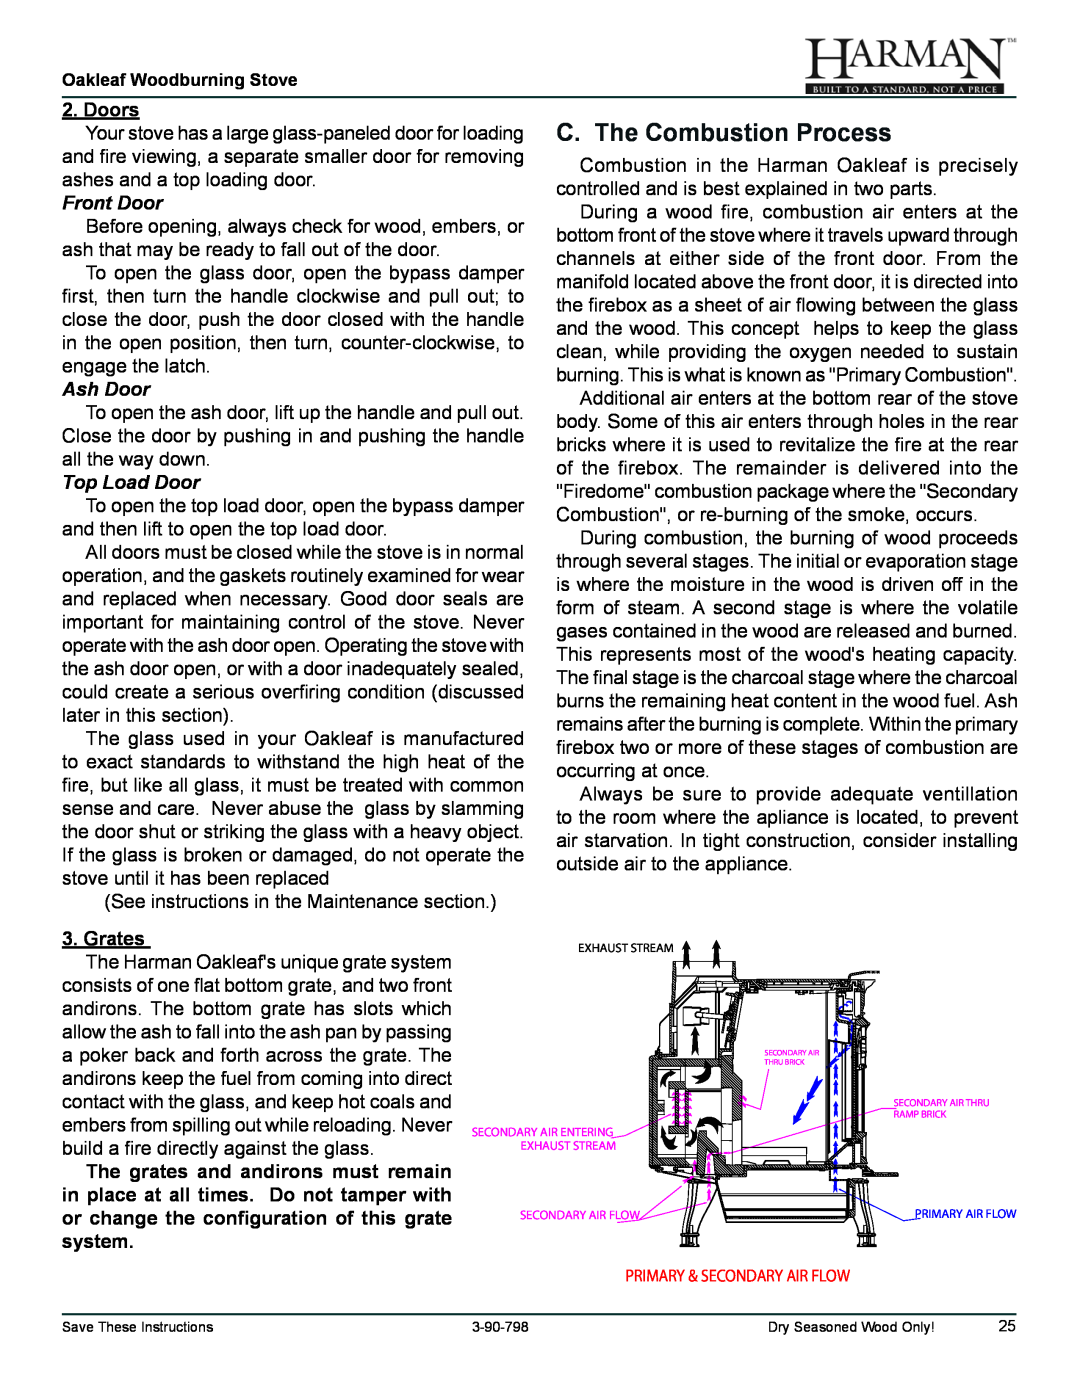 Harman Stove Company 1-90-79700 owner manual C. The Combustion Process, Doors, Front Door, Ash Door, Top Load Door, Grates 